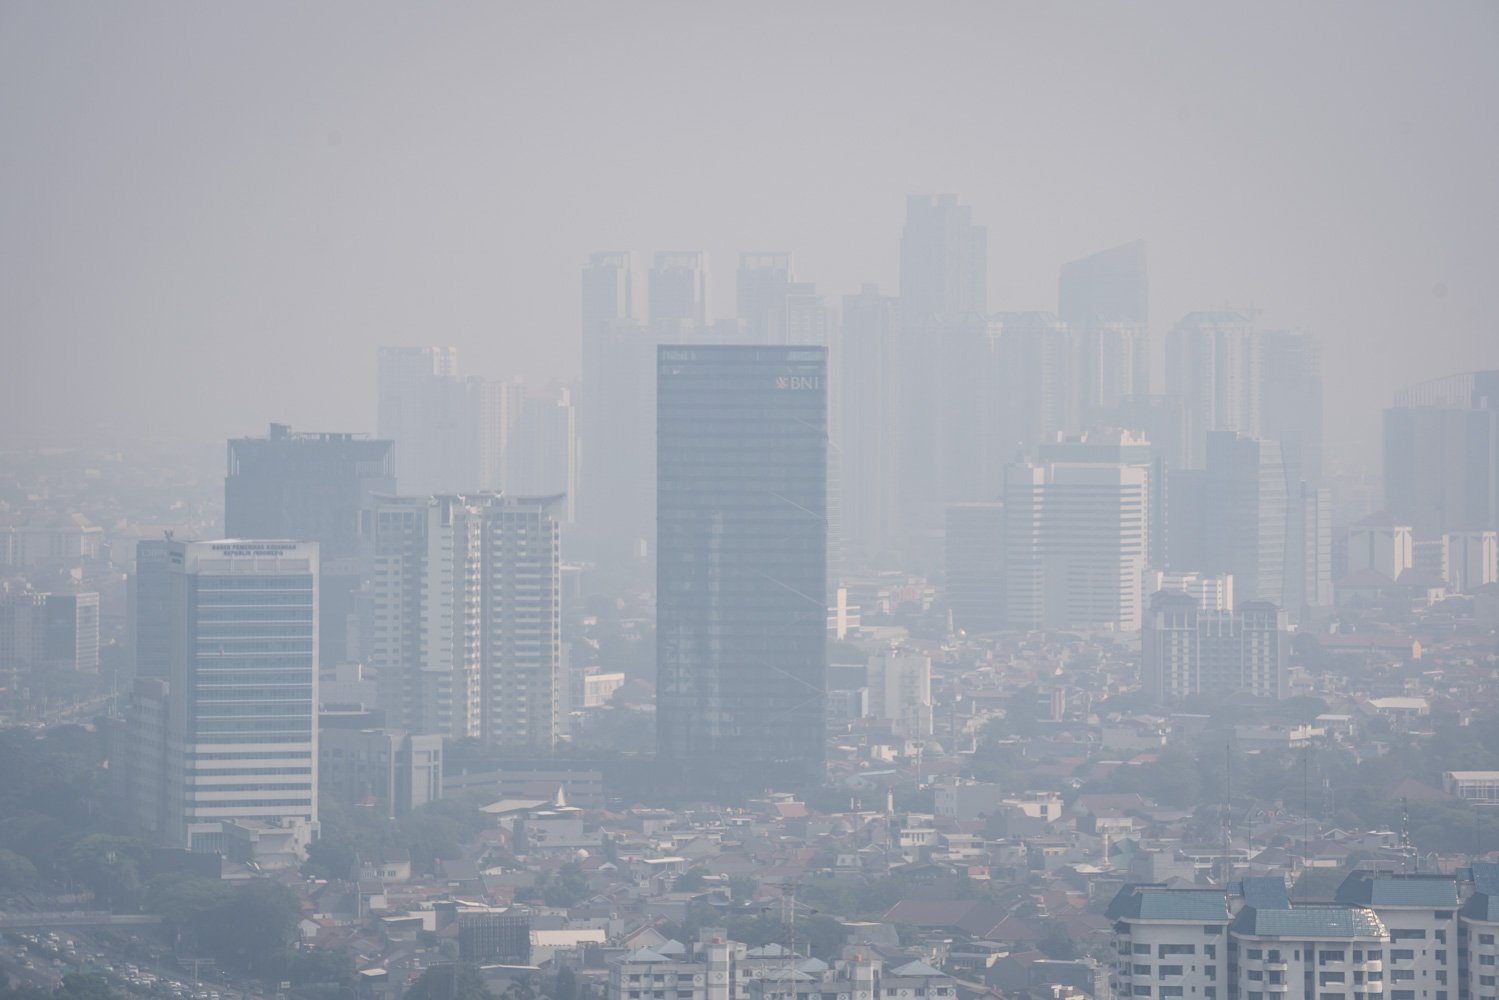 Lanskap suasana gedung diselimuti kabut polusi udara di Jakarta pada Selasa (22/8) masih buruk. Terbukti melalui pengukuran yang diterakan melalui situs pemantau kualitas udara Iqair, indeks AQI US masih pada 172 dan bertanda merah. Sementara polutan utama pada PM2.5 sebagaimana dikases pada pukul 08.19 WIB.